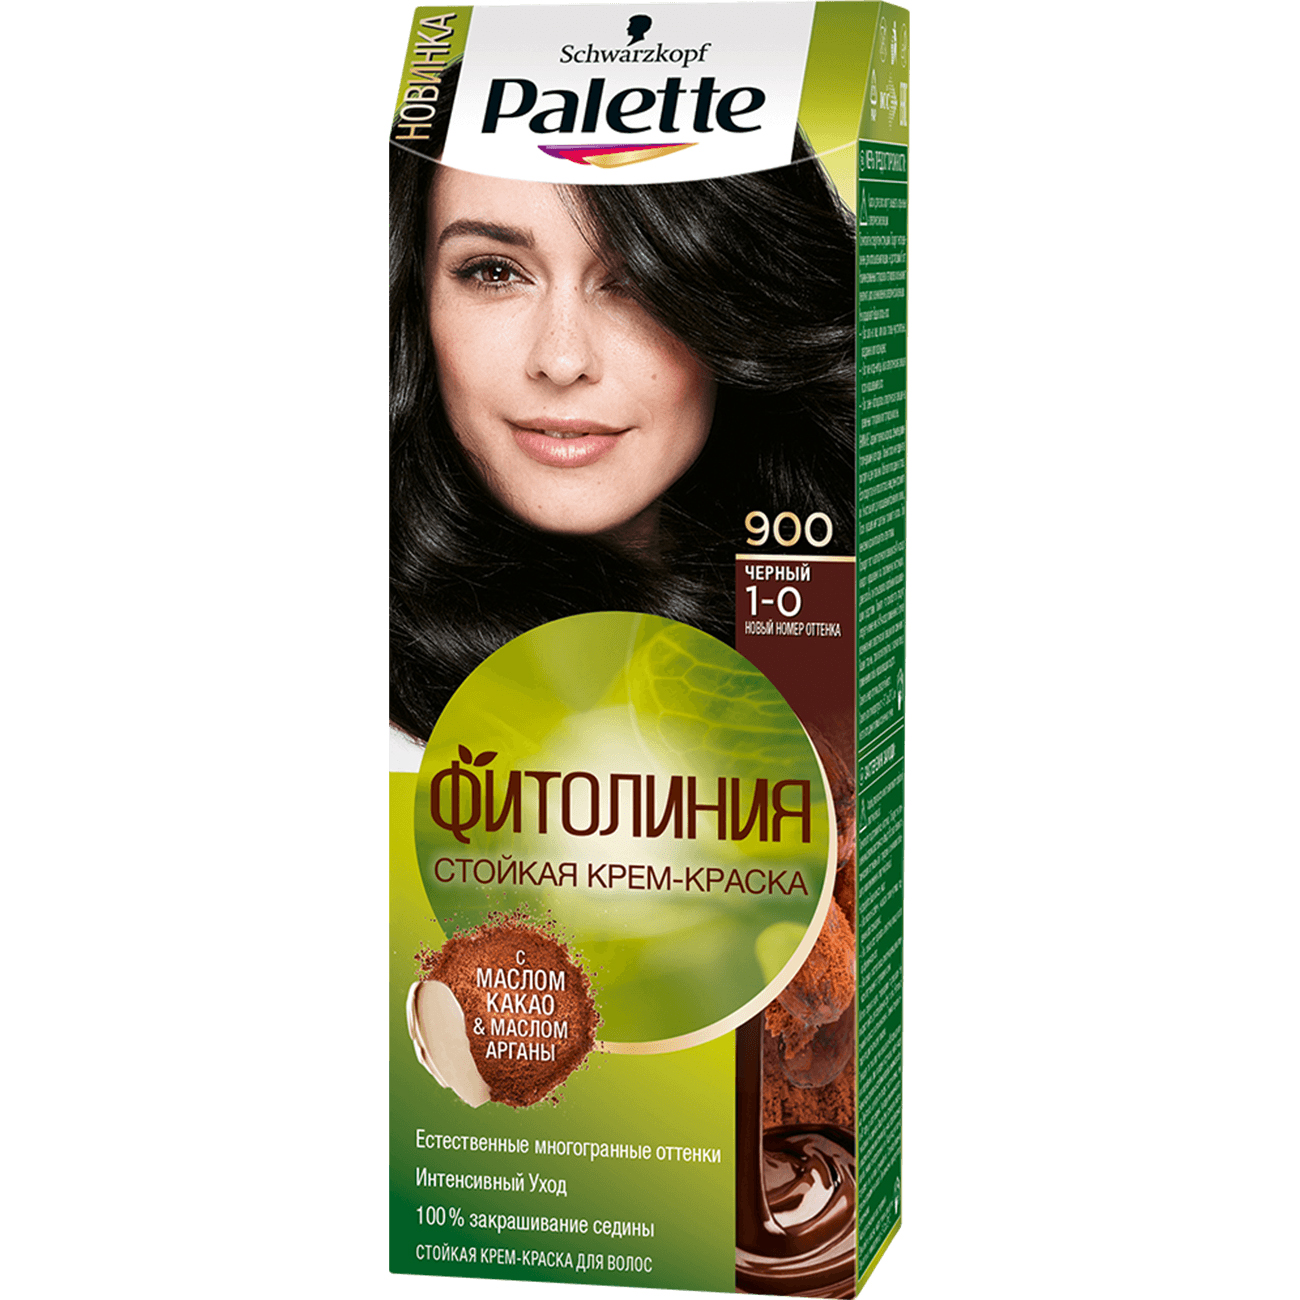 Крем-краска для волос Palette Фитолиния 1-0, 900 Черный 110 мл карандаш контурный для бровей тон 202